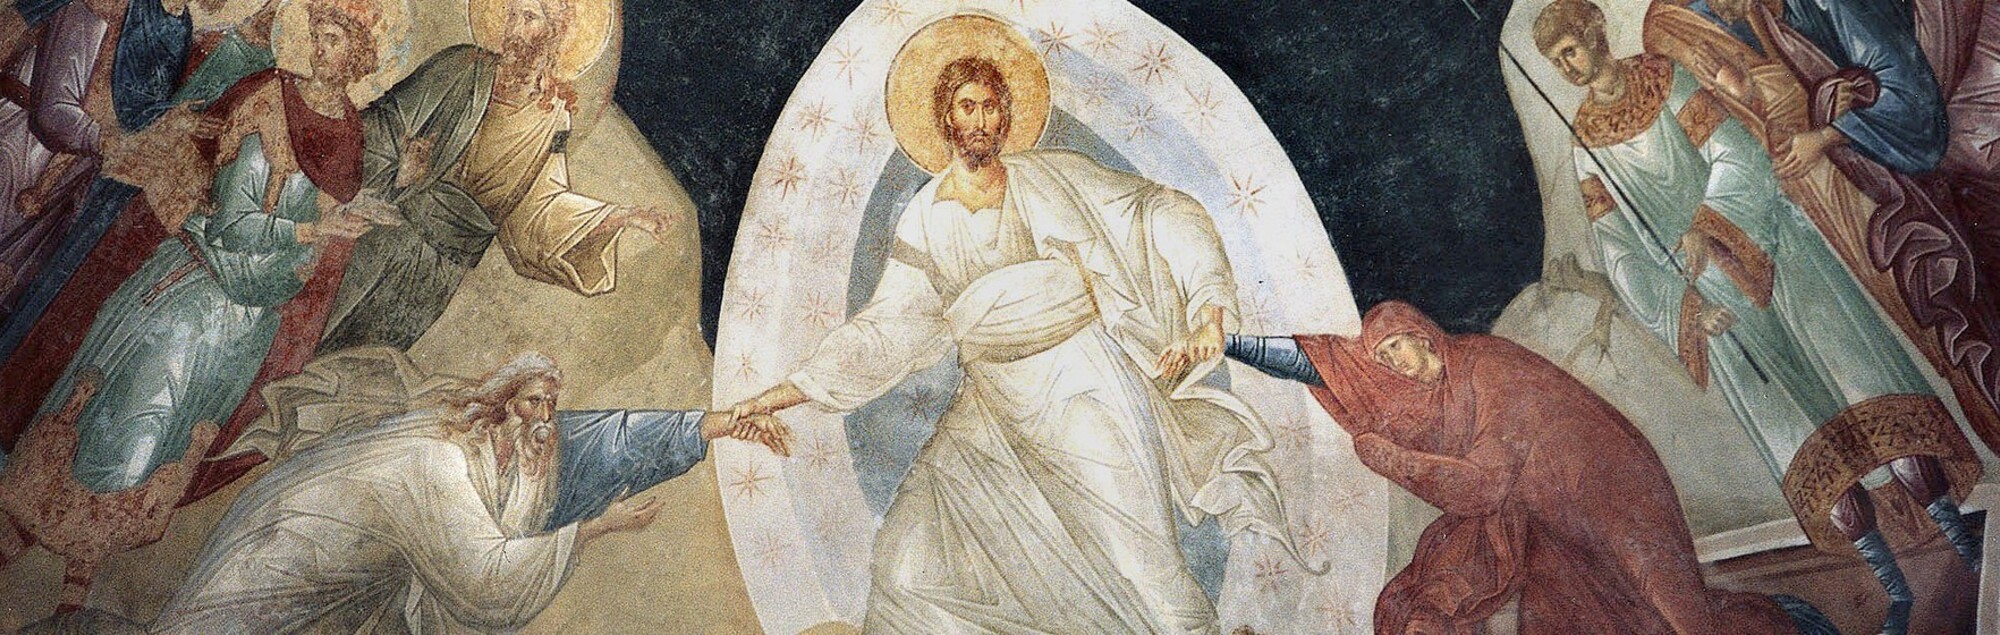 Ein Fresko (frühes 14. Jahrh.) in der Kirche des byzantinischen Chora-Klosters, Kariye Camii, Istanbul,  zeigt die Auferstehung Christi.